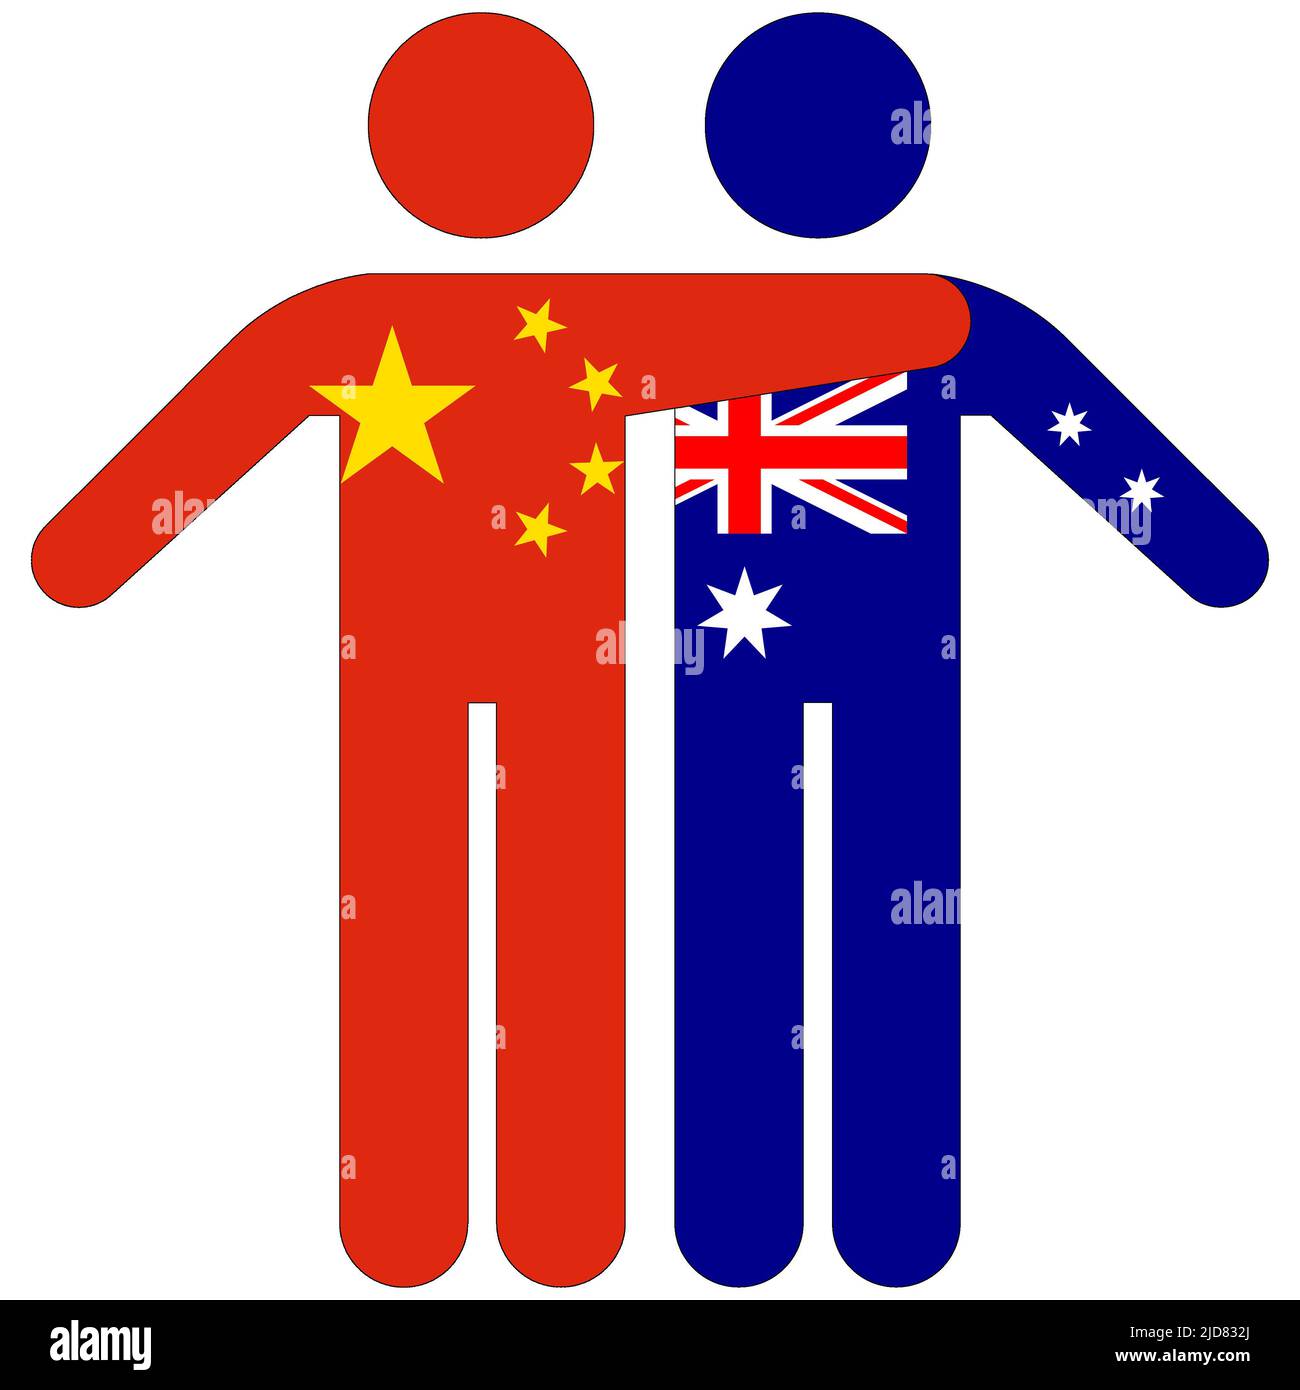 China - Australia : friendship concept on white background Stock Photo